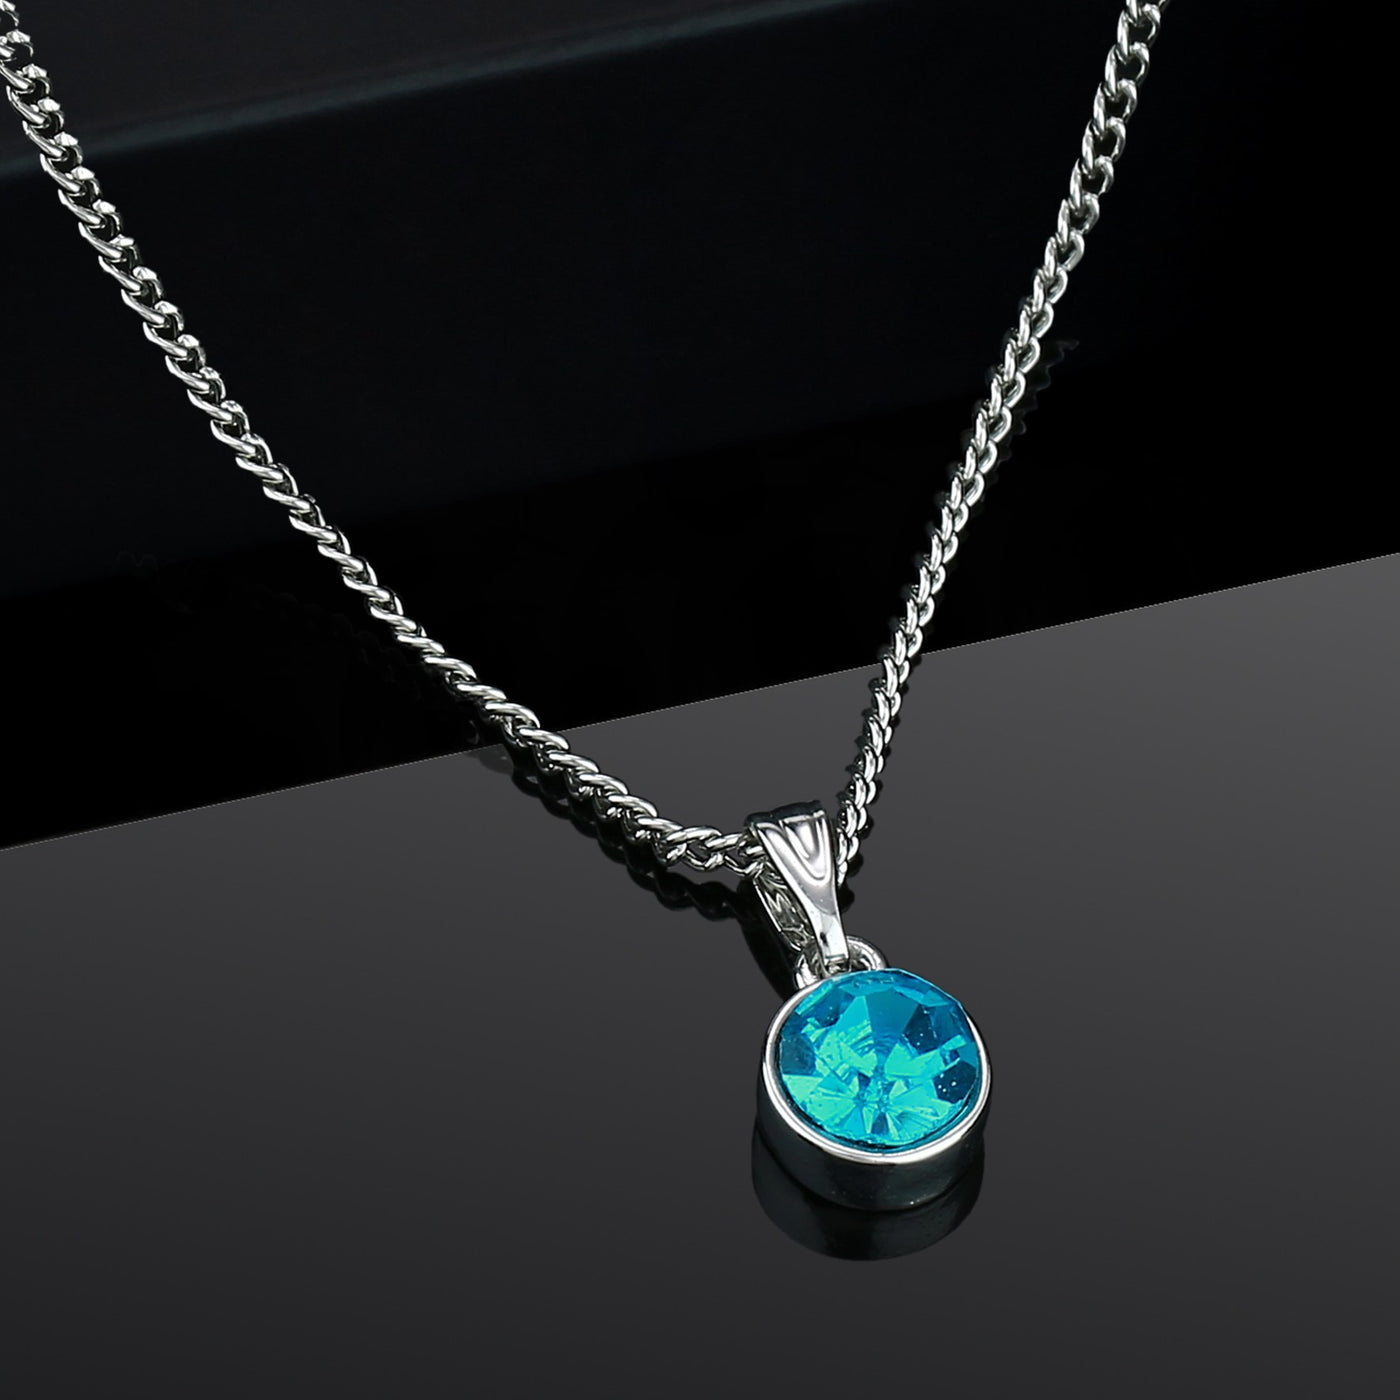 Estele - Rhodium Aquamarine Pendant with Austrian Crystal for Women / Girls